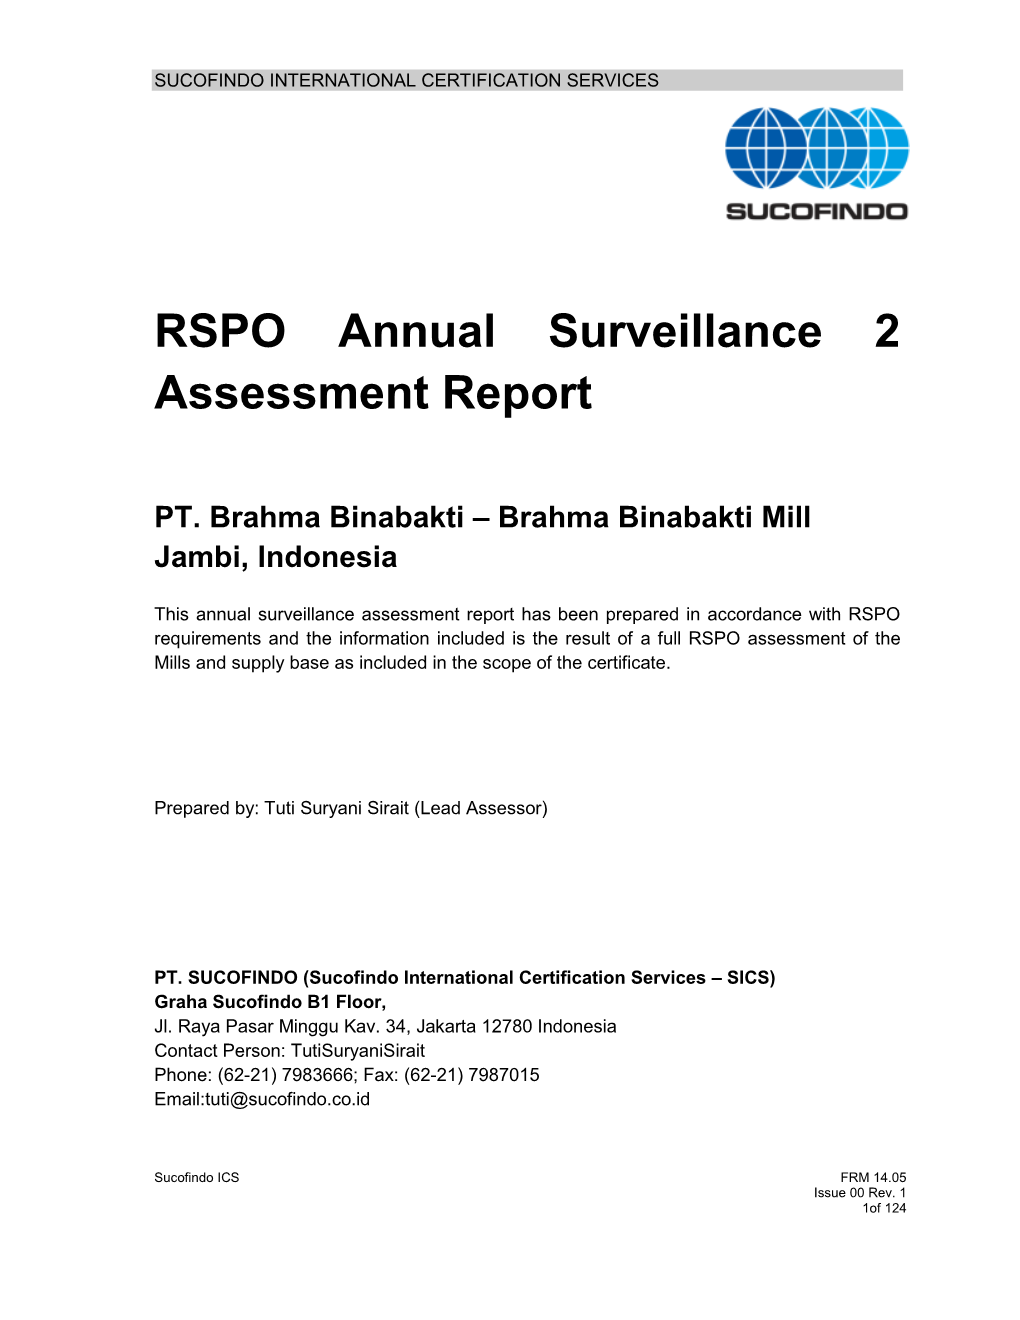 RSPO Annual Surveillance 2 Assessment Report PT